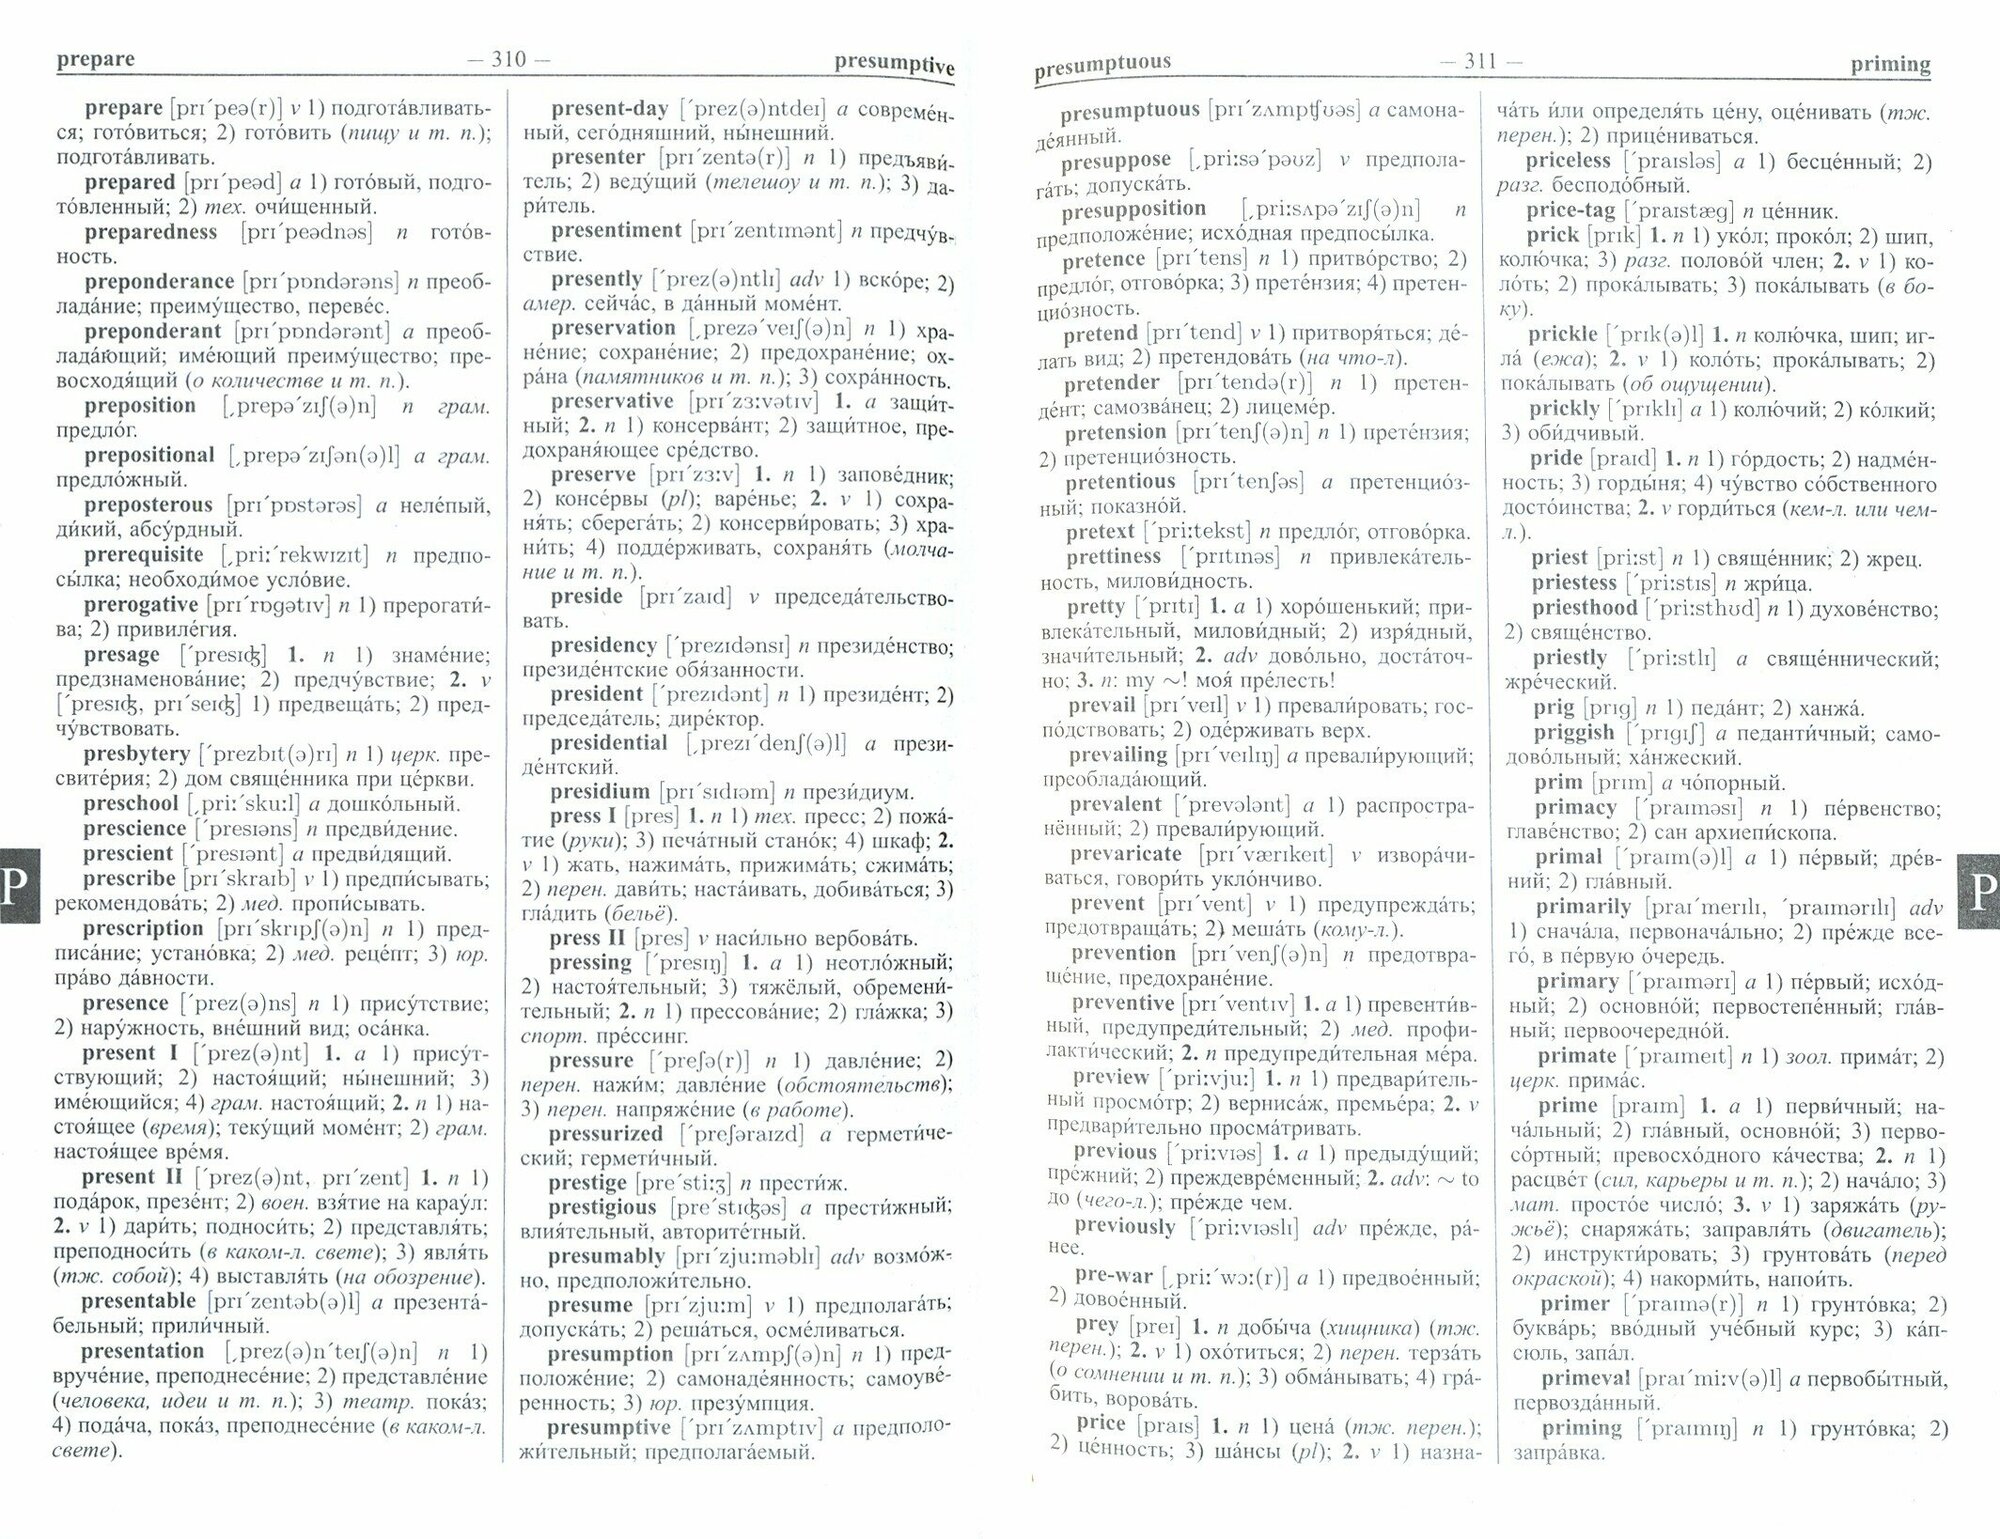 Мюллер В. К. Новый англо-русский русско-английский словарь Мюллера 250 000 слов и словосочетаний с двусторонней транскрипцией